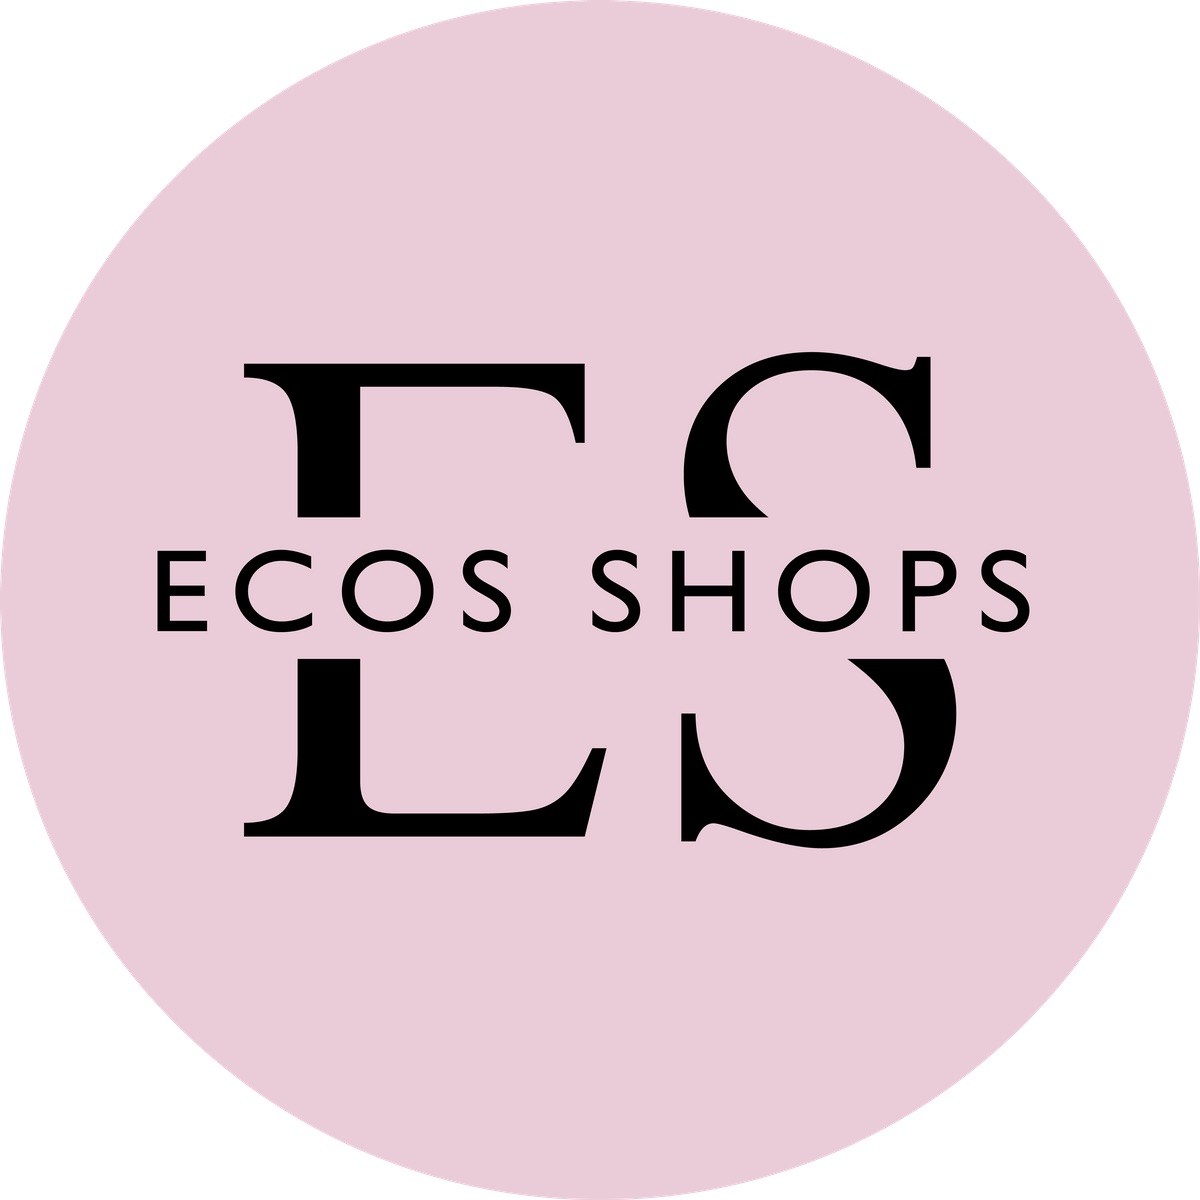 Ecos Shops